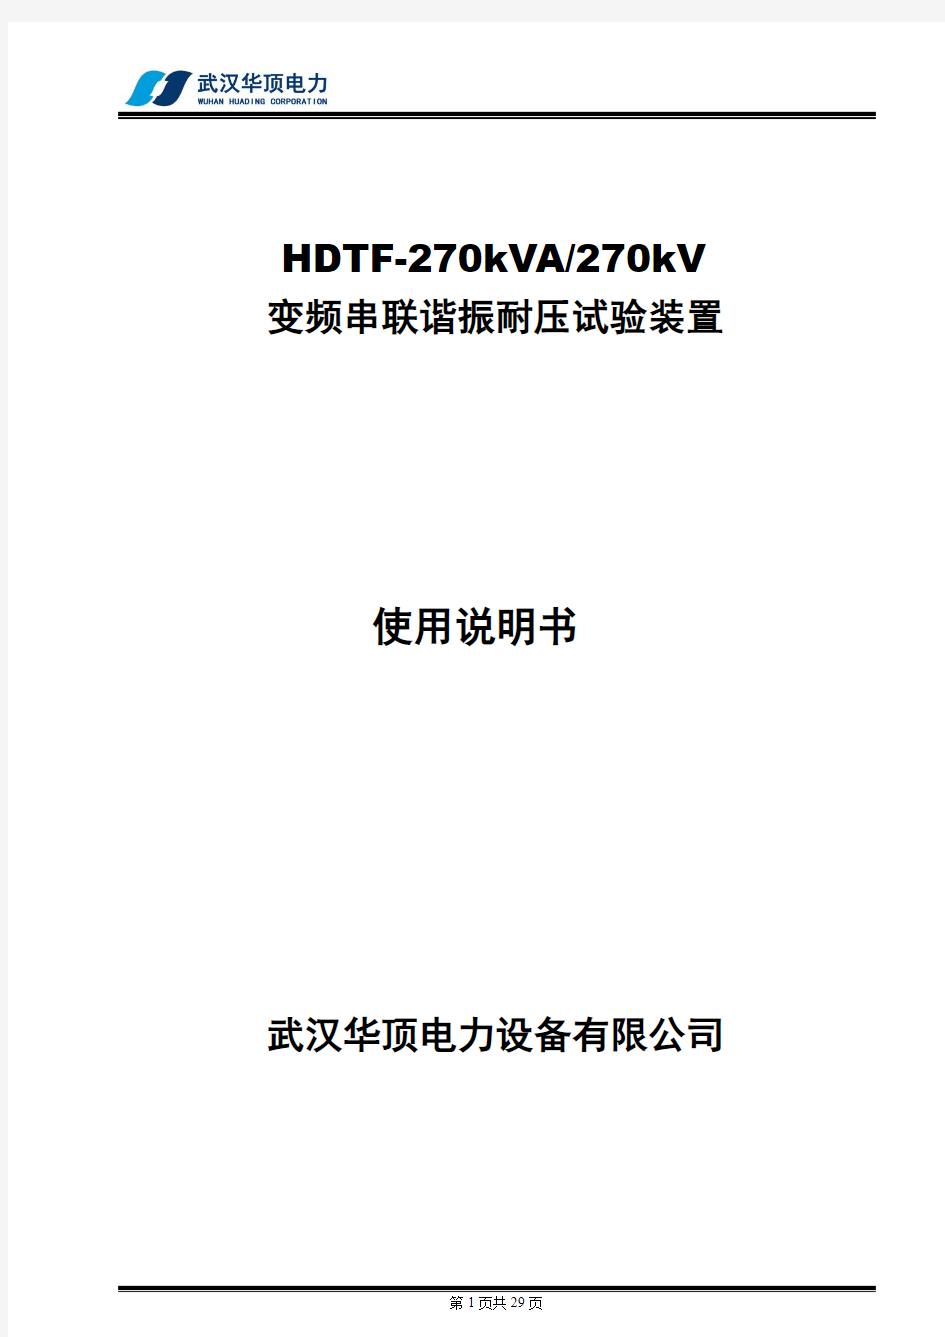 HDTF270KVA270KV变频串联谐振耐压试验装置使用说明书